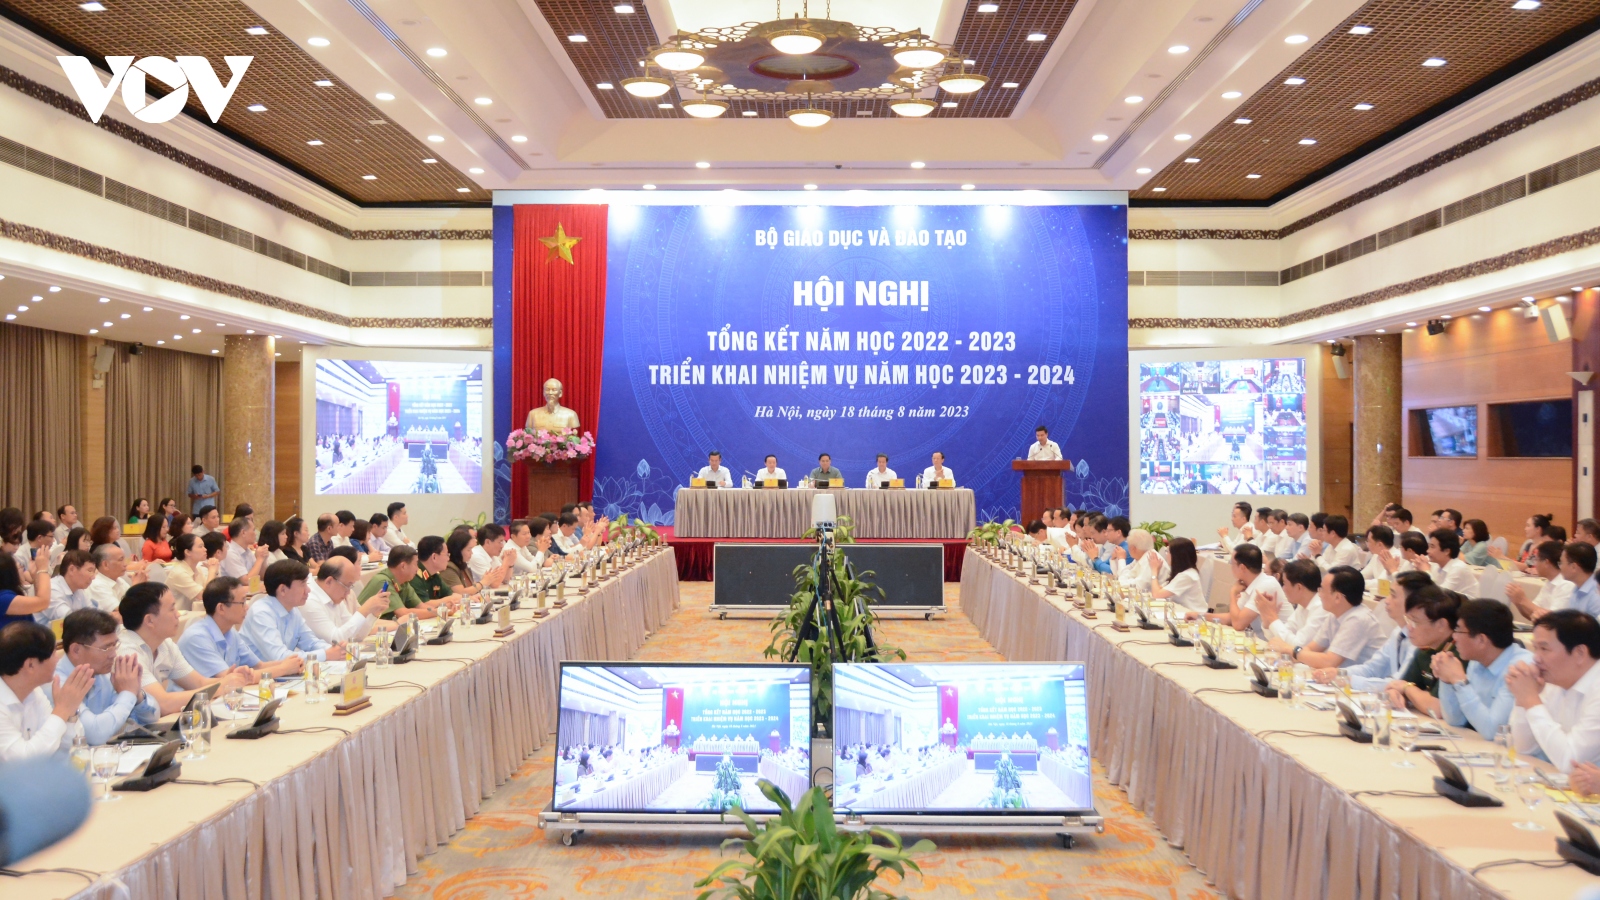 Thiếu quỹ đất, Hà Nội và TP HCM đề xuất cơ chế đặc thù xây dựng trường học